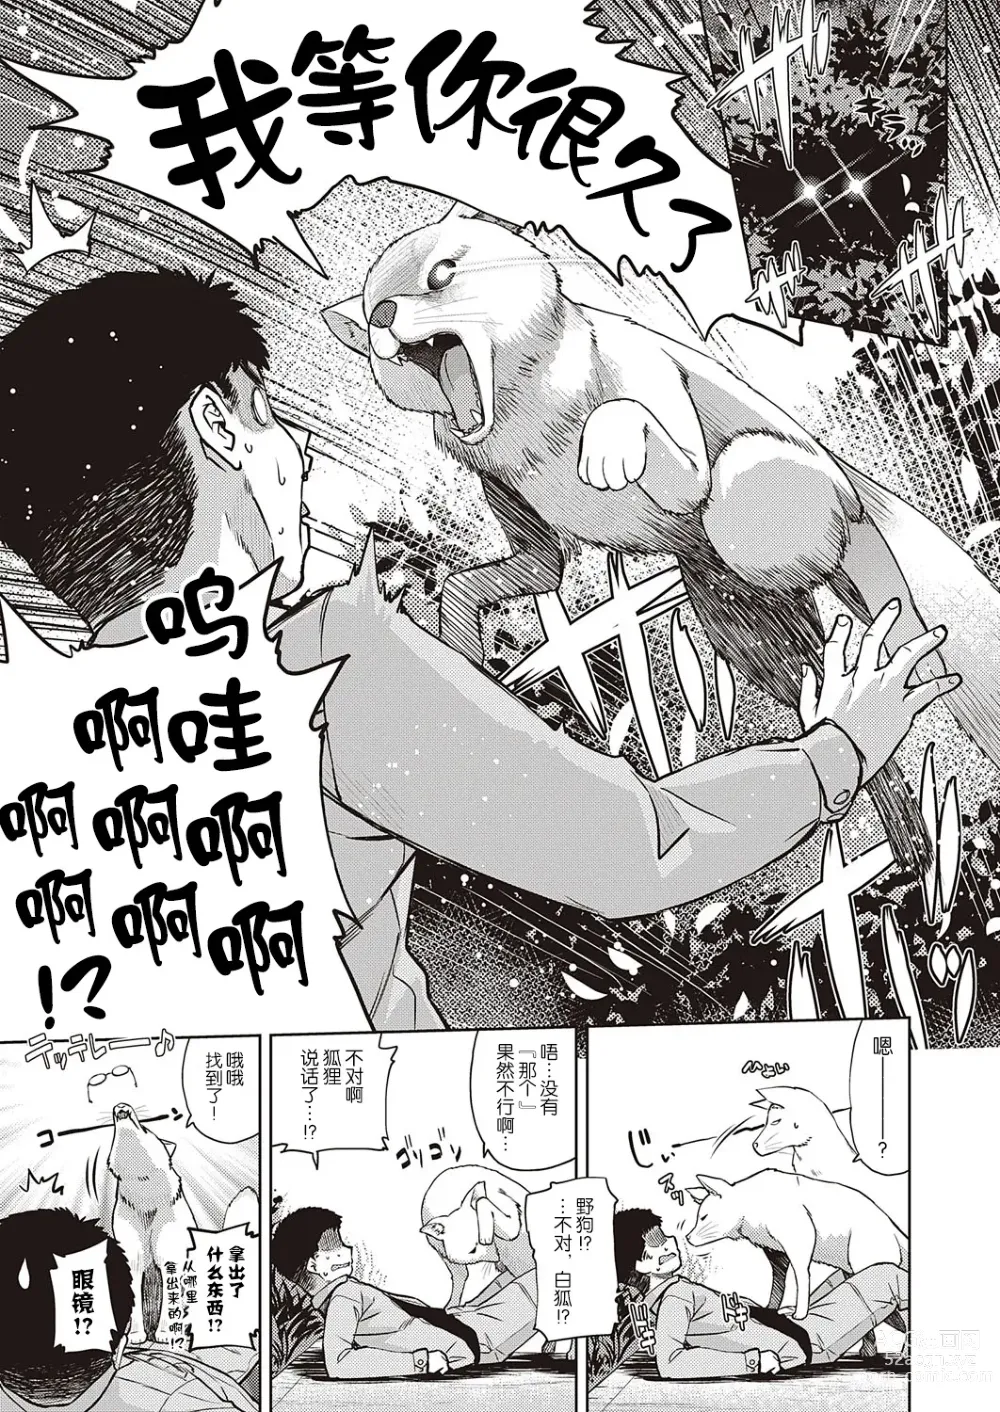 Page 3 of manga Mate ba Megane no Kitsune ari